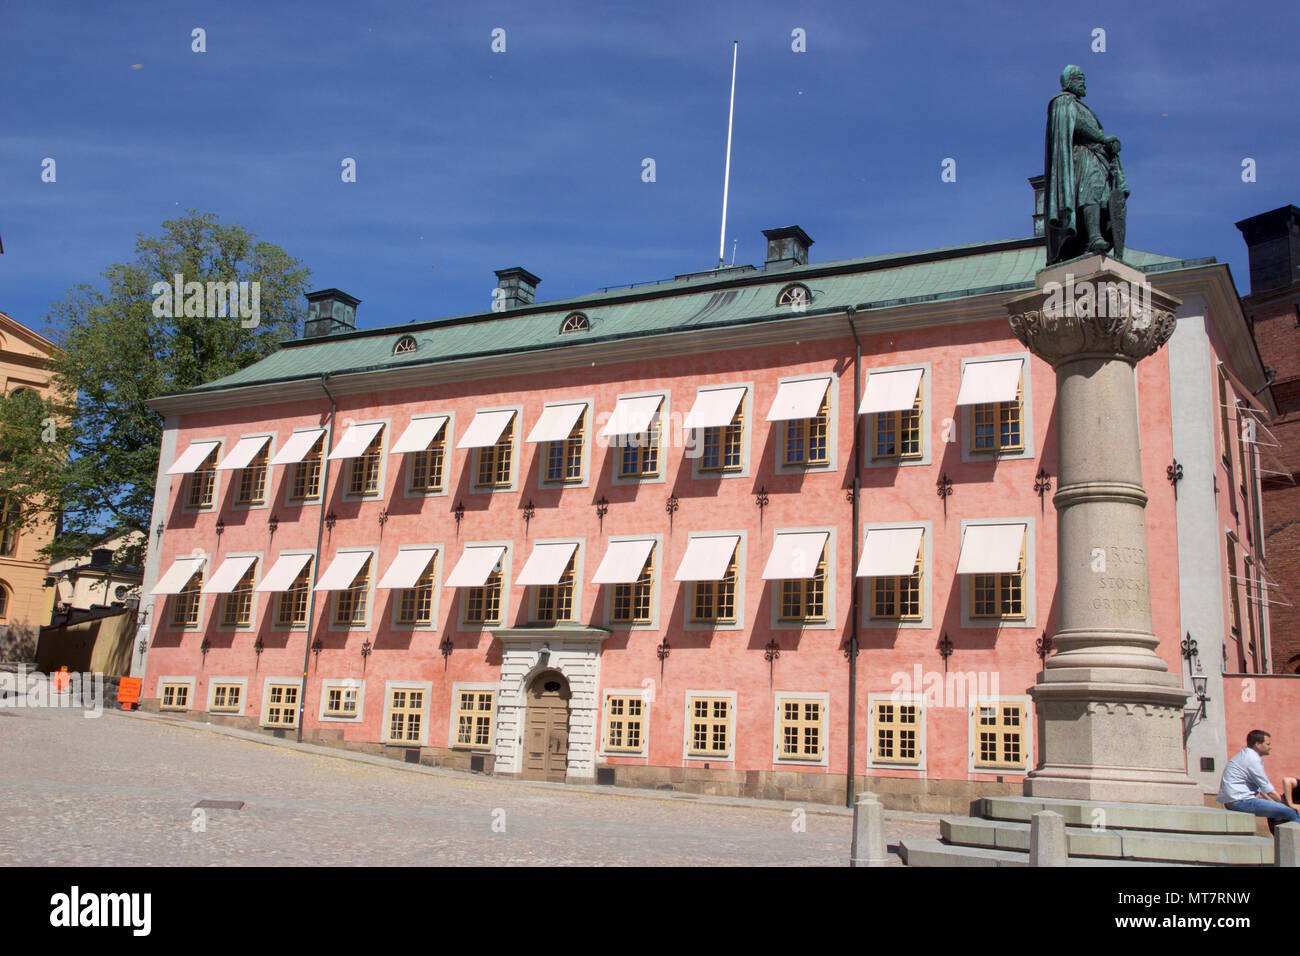 Stenbockska palatset ou Stenbock Palace, est un palace avec une façade rose construit au 17ème siècle en Riddarholmen, Stockholm, Suède Banque D'Images